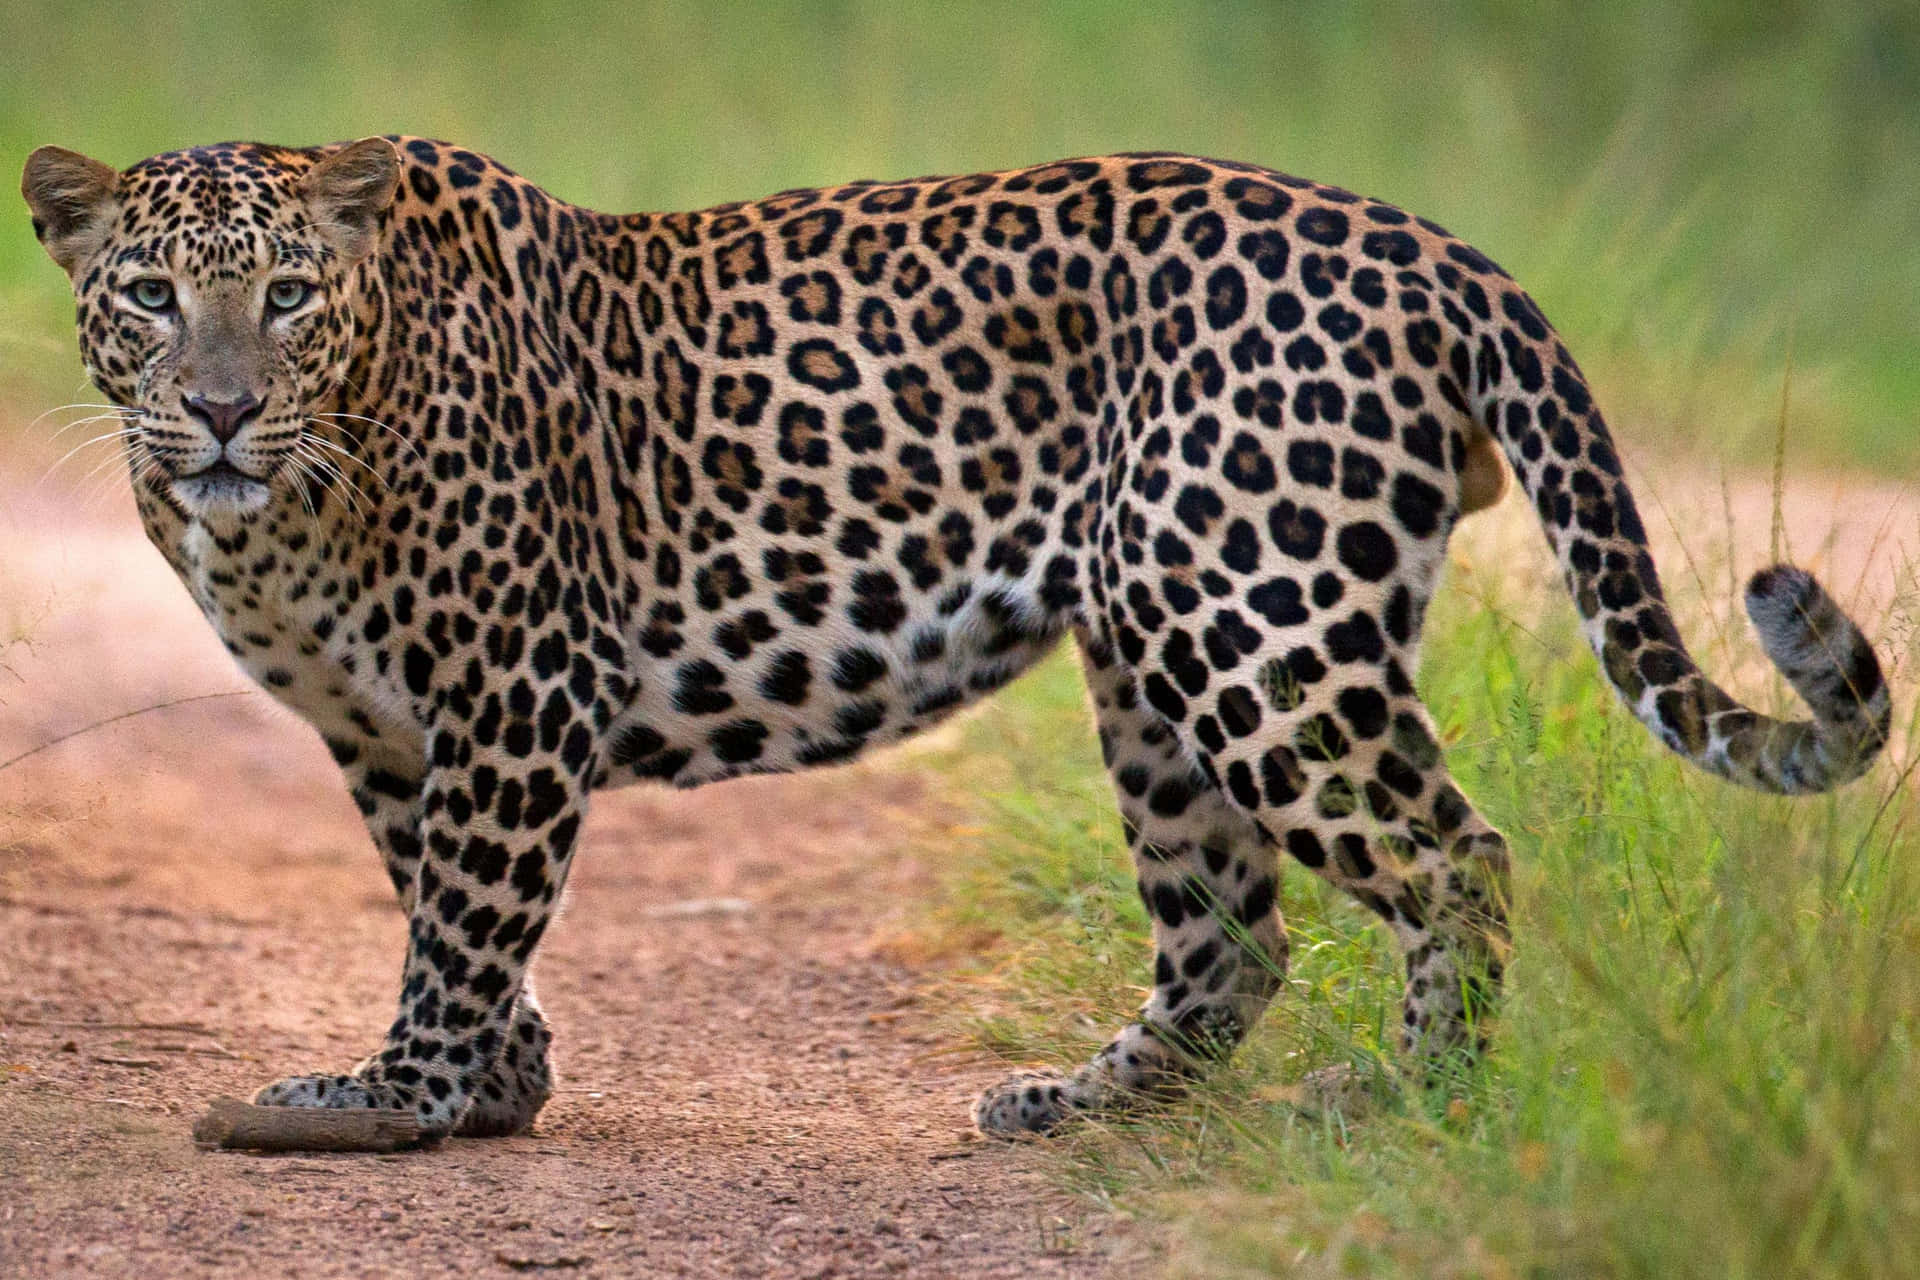 Imagende Un Leopardo Parado Cerca De Un Pasto Verde